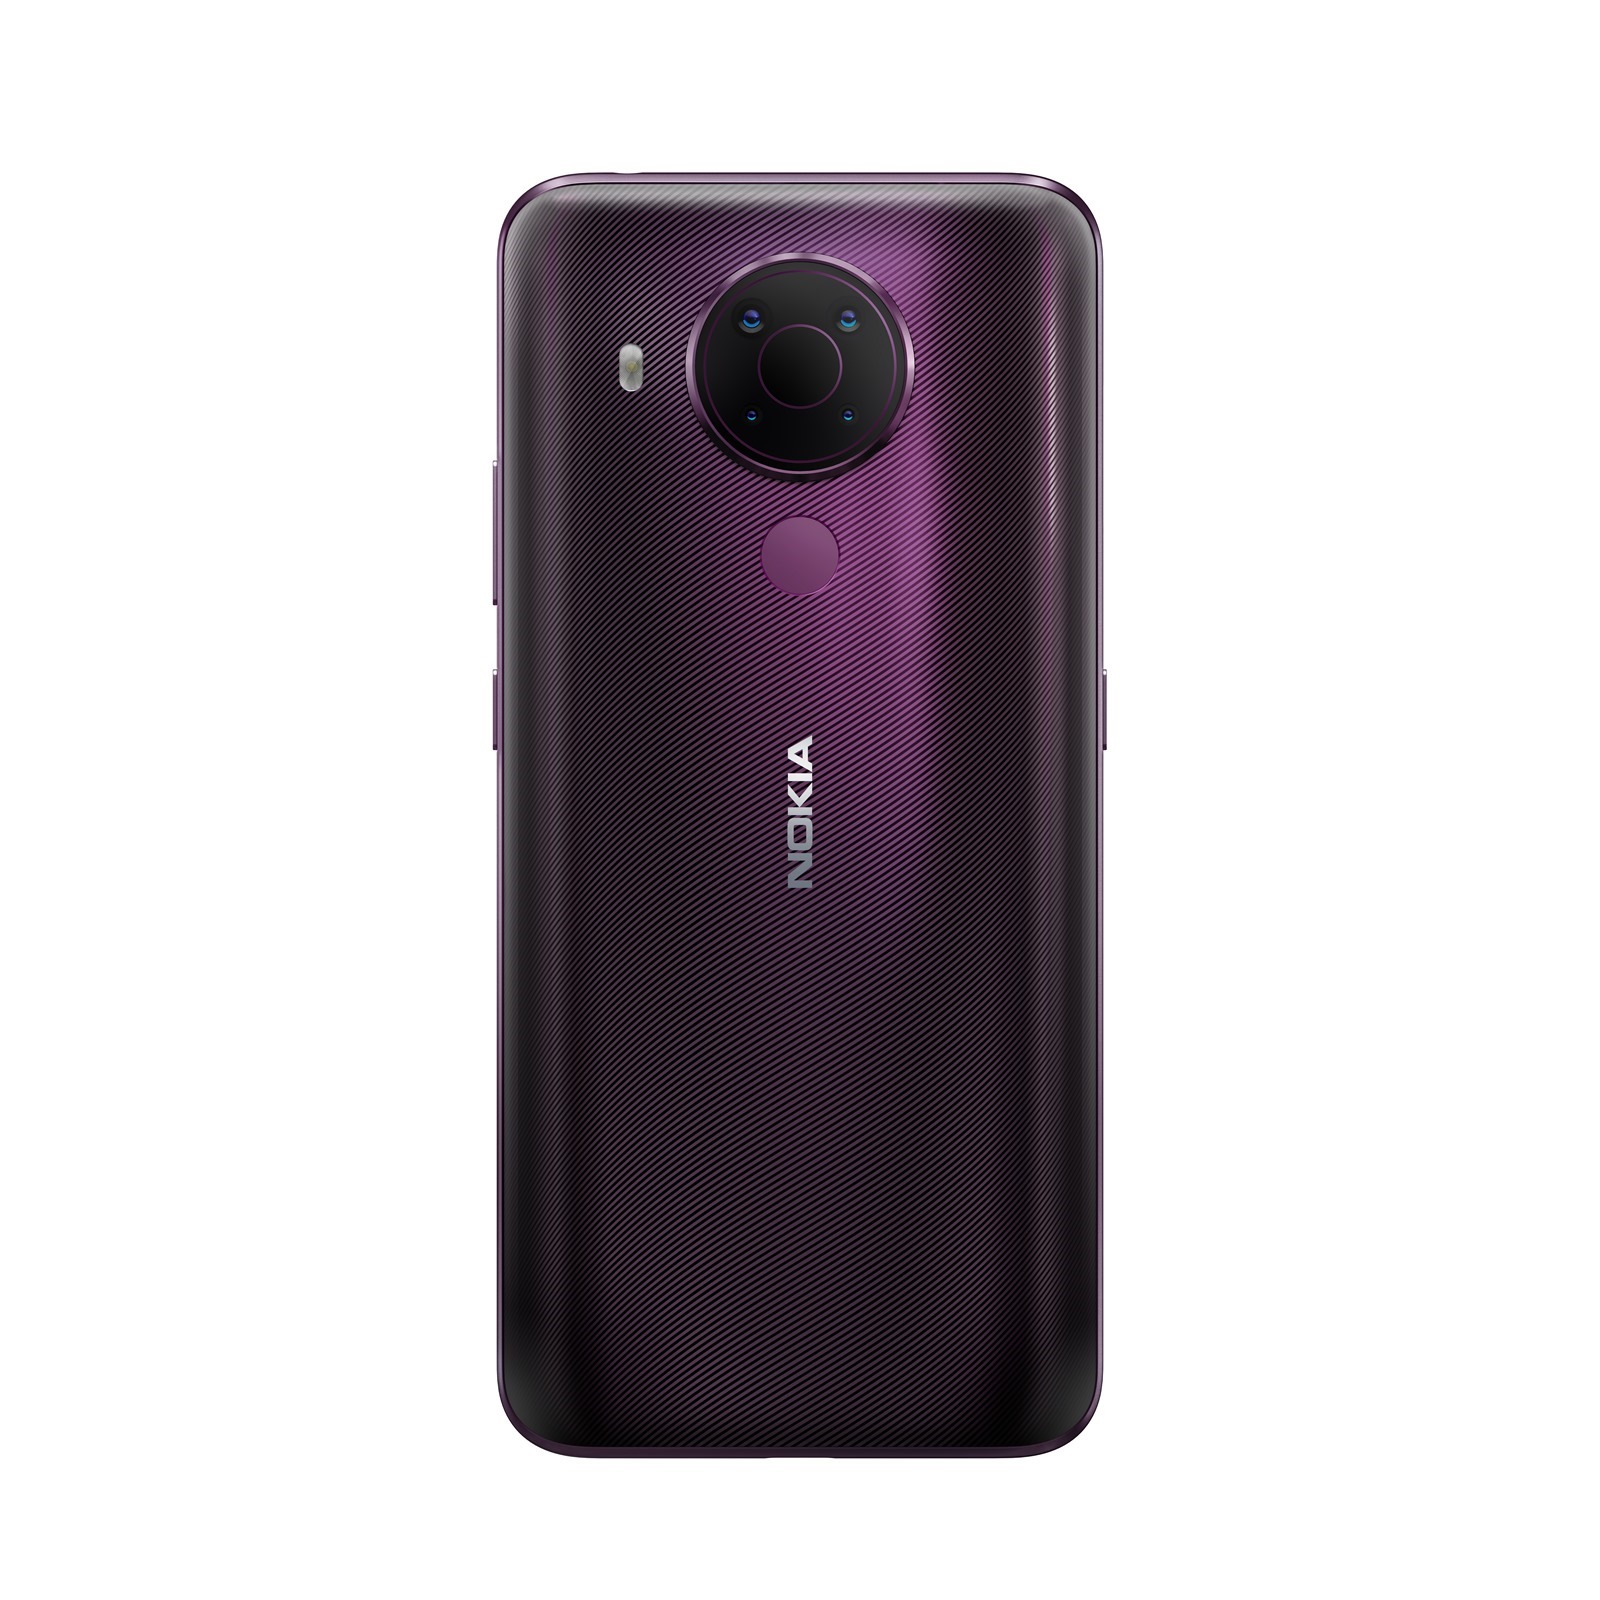 全新 Nokia 5.4 矚目登場 精彩斜槓人生一手掌握 4800 萬畫素主鏡頭 x 專業錄影模式隨手拍 x 兩天長待機不斷電 @3C 達人廖阿輝